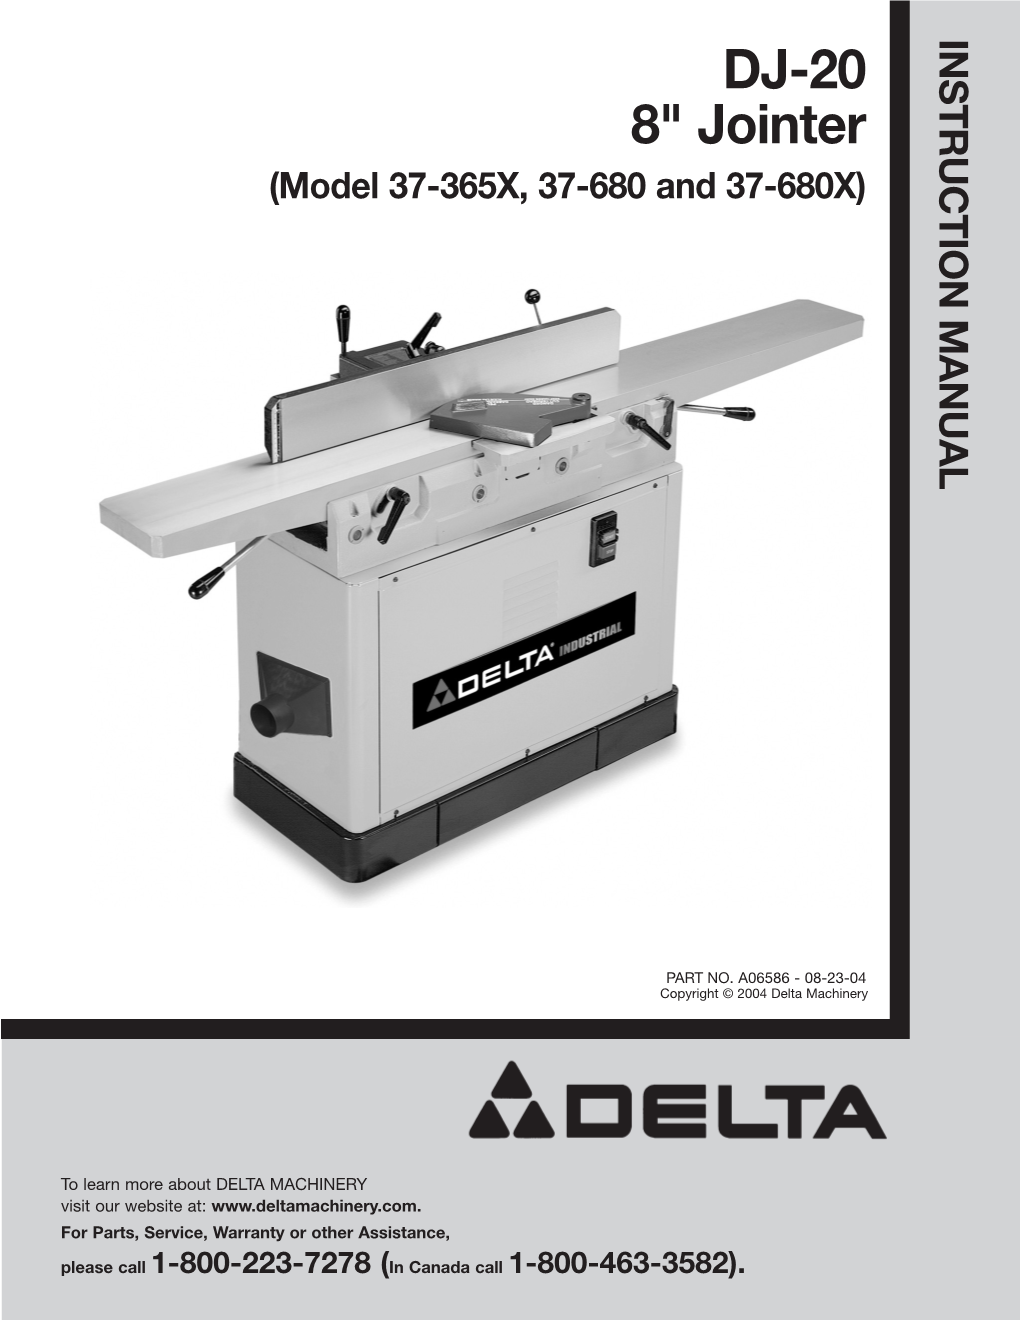 Delta DJ-20 8” Jointer